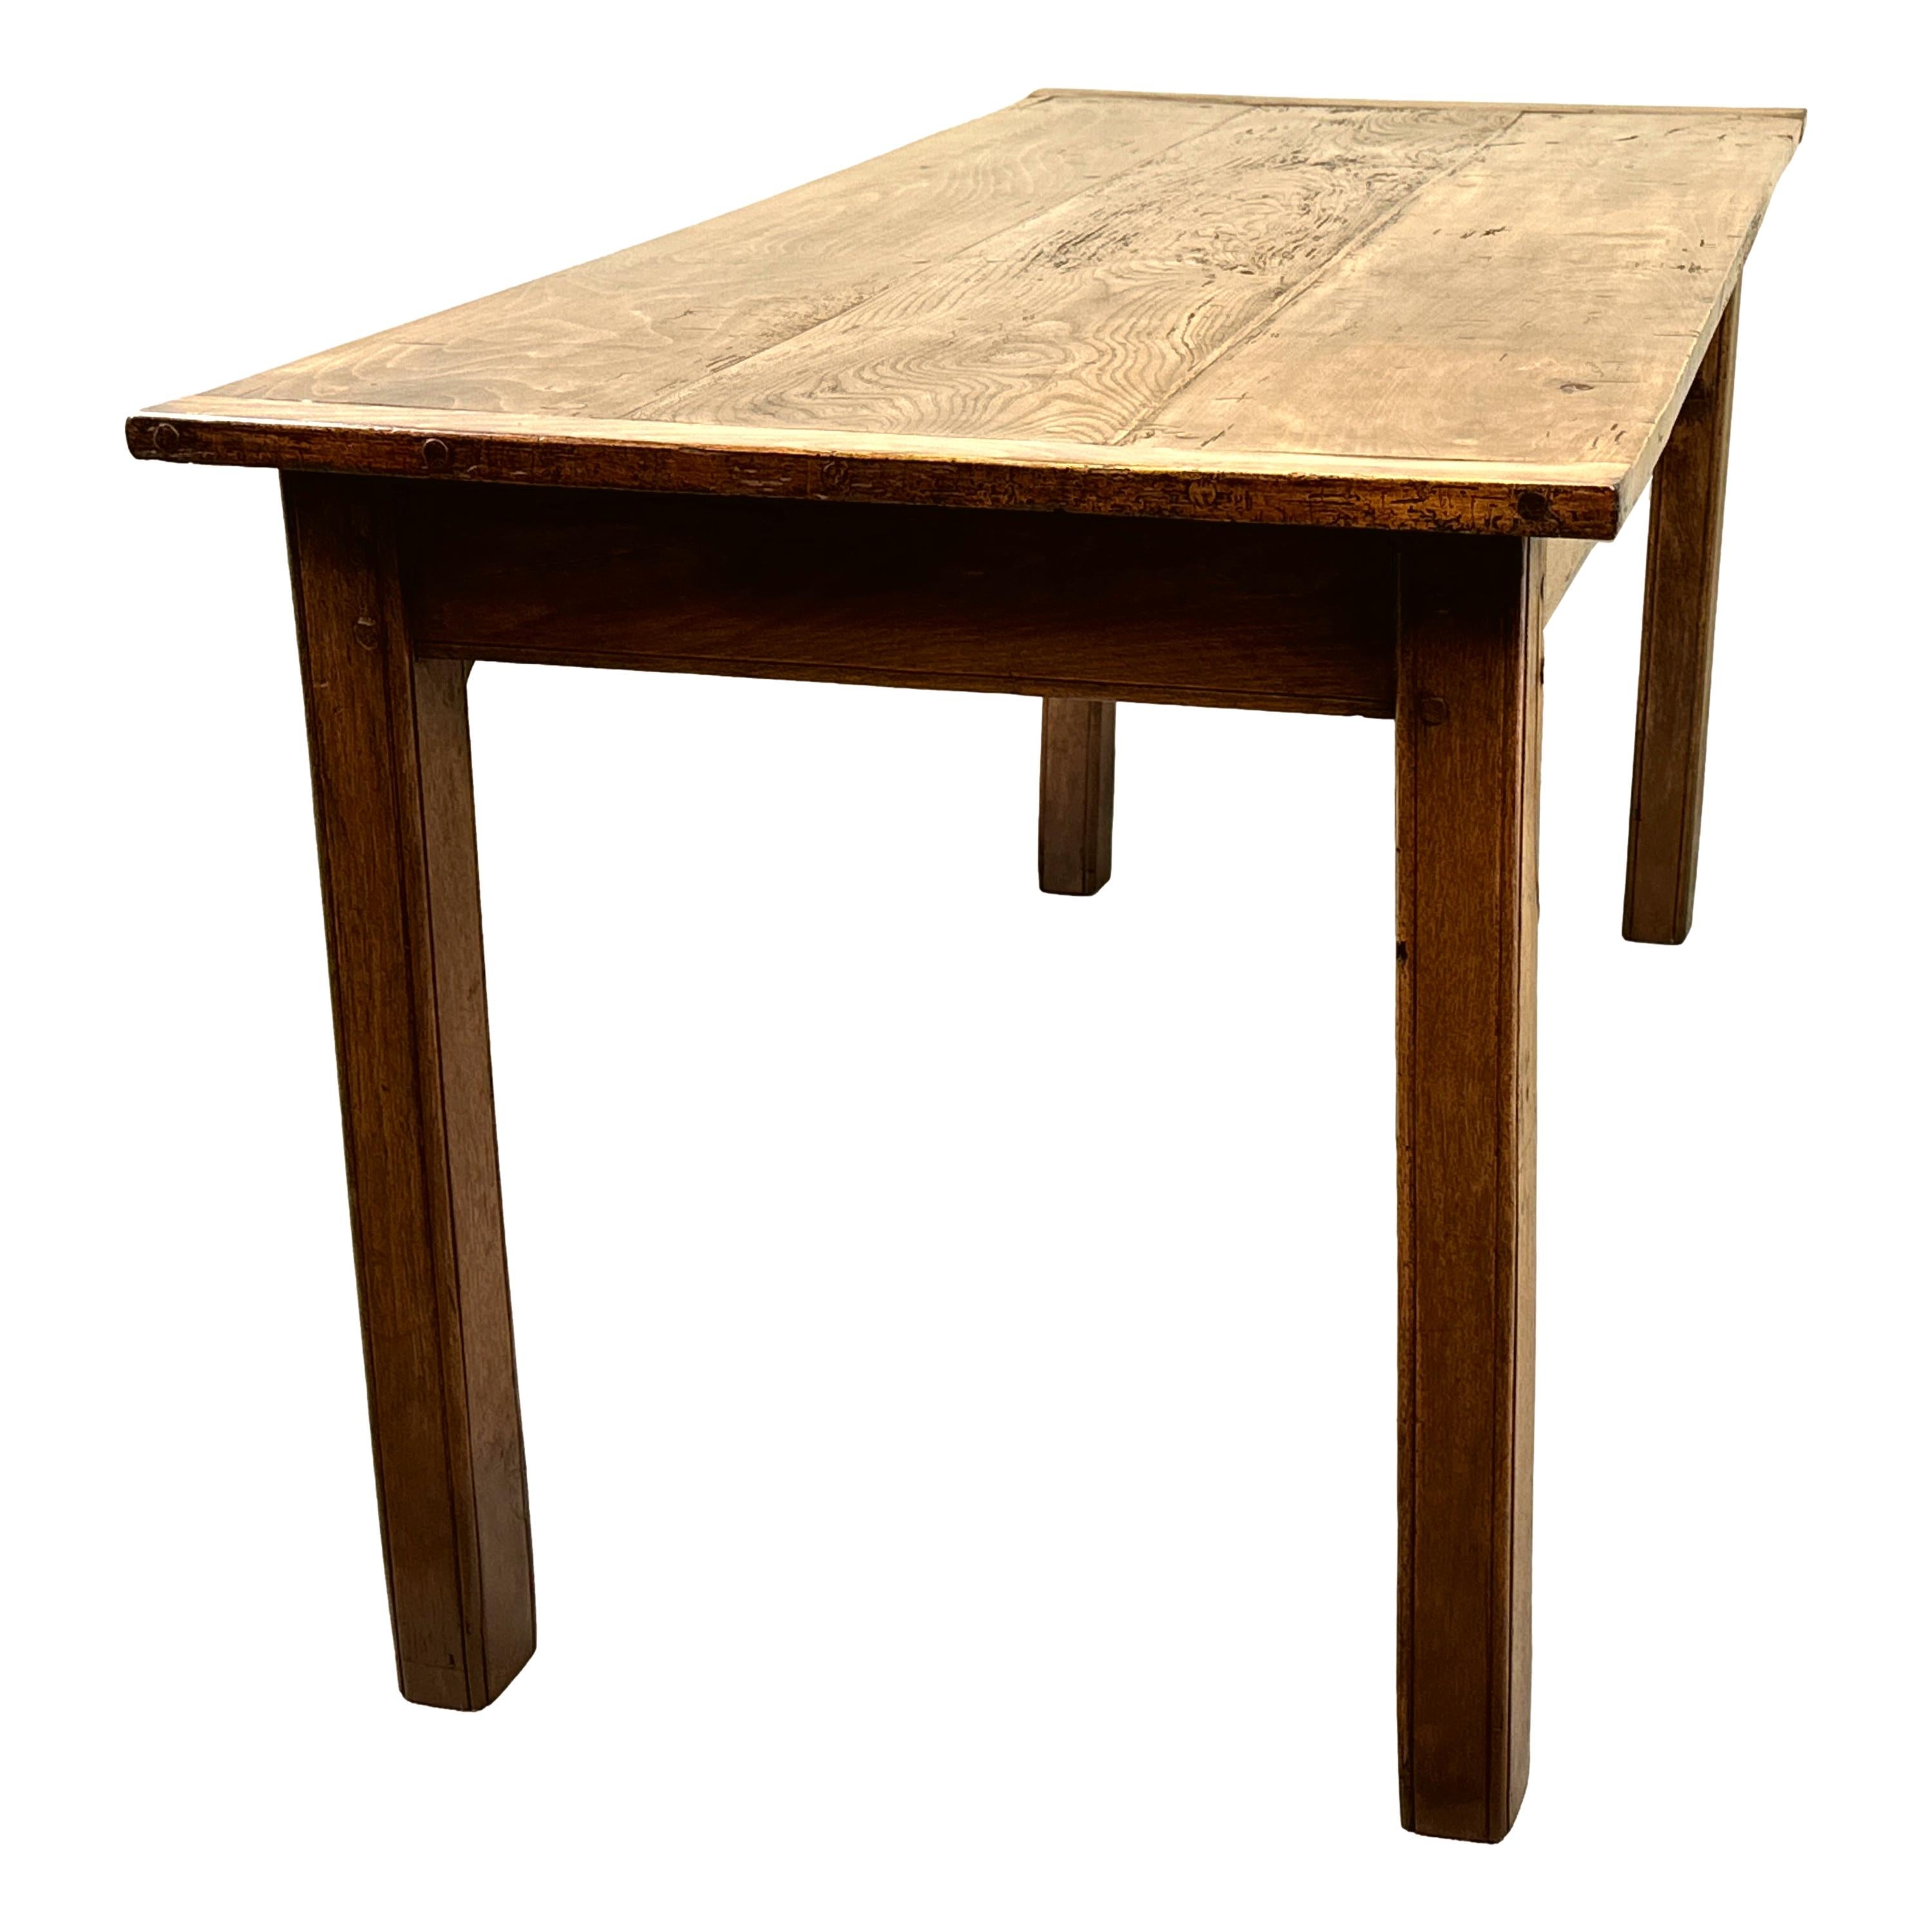 Très attrayante table de cuisine en chêne, hêtre et orme du milieu du 19e siècle, avec un plateau en planches bien structuré aux extrémités dégagées, surmonté d'un tiroir à la frise élégante, reposant sur des pieds carrés robustes.


Cette table de